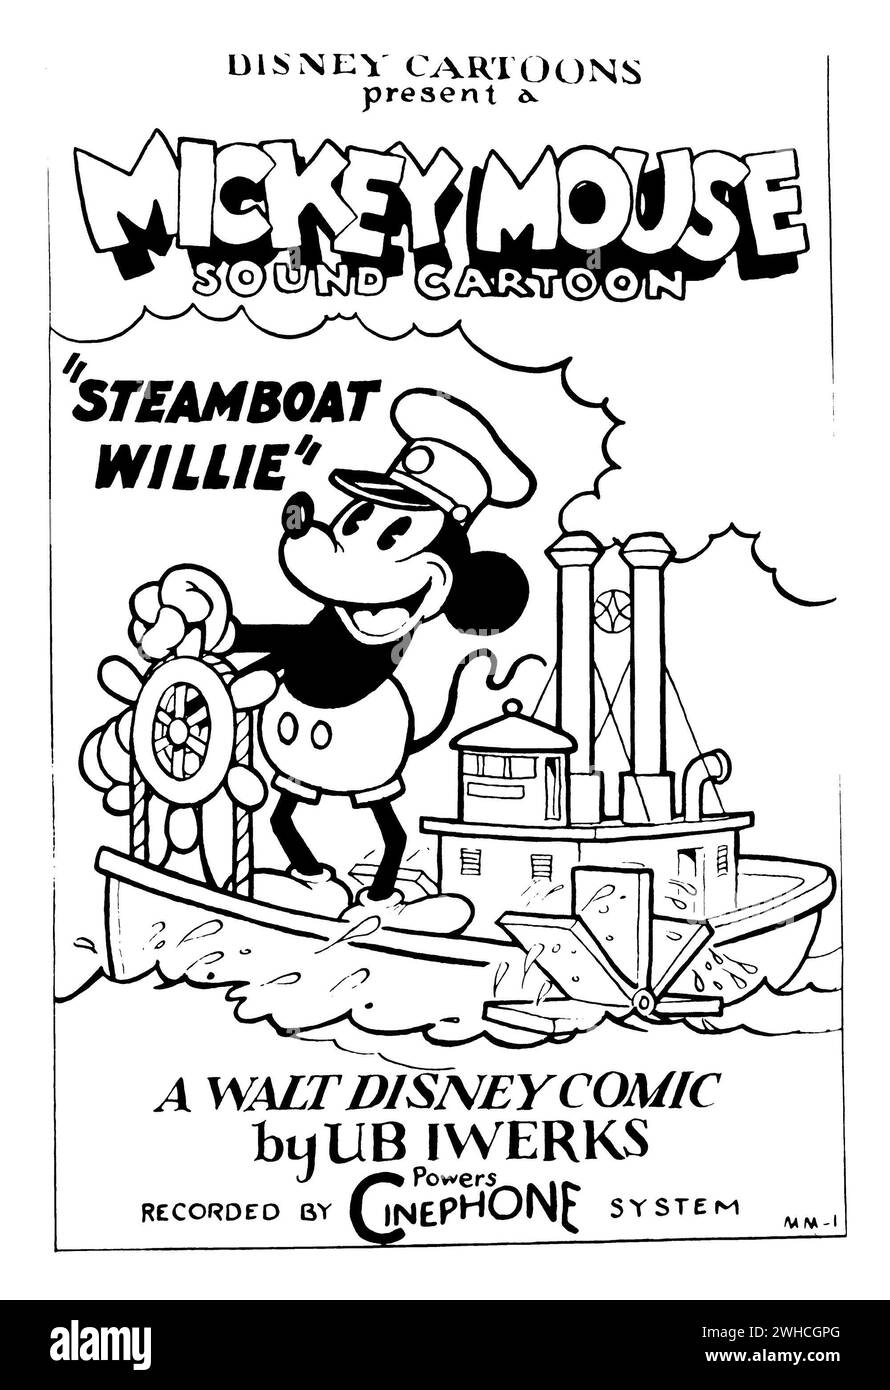 Steamboat Willie. Poster originale del cartone animato del 1928, Steamboat Willie - il primo corto animato di Topolino. Foto Stock